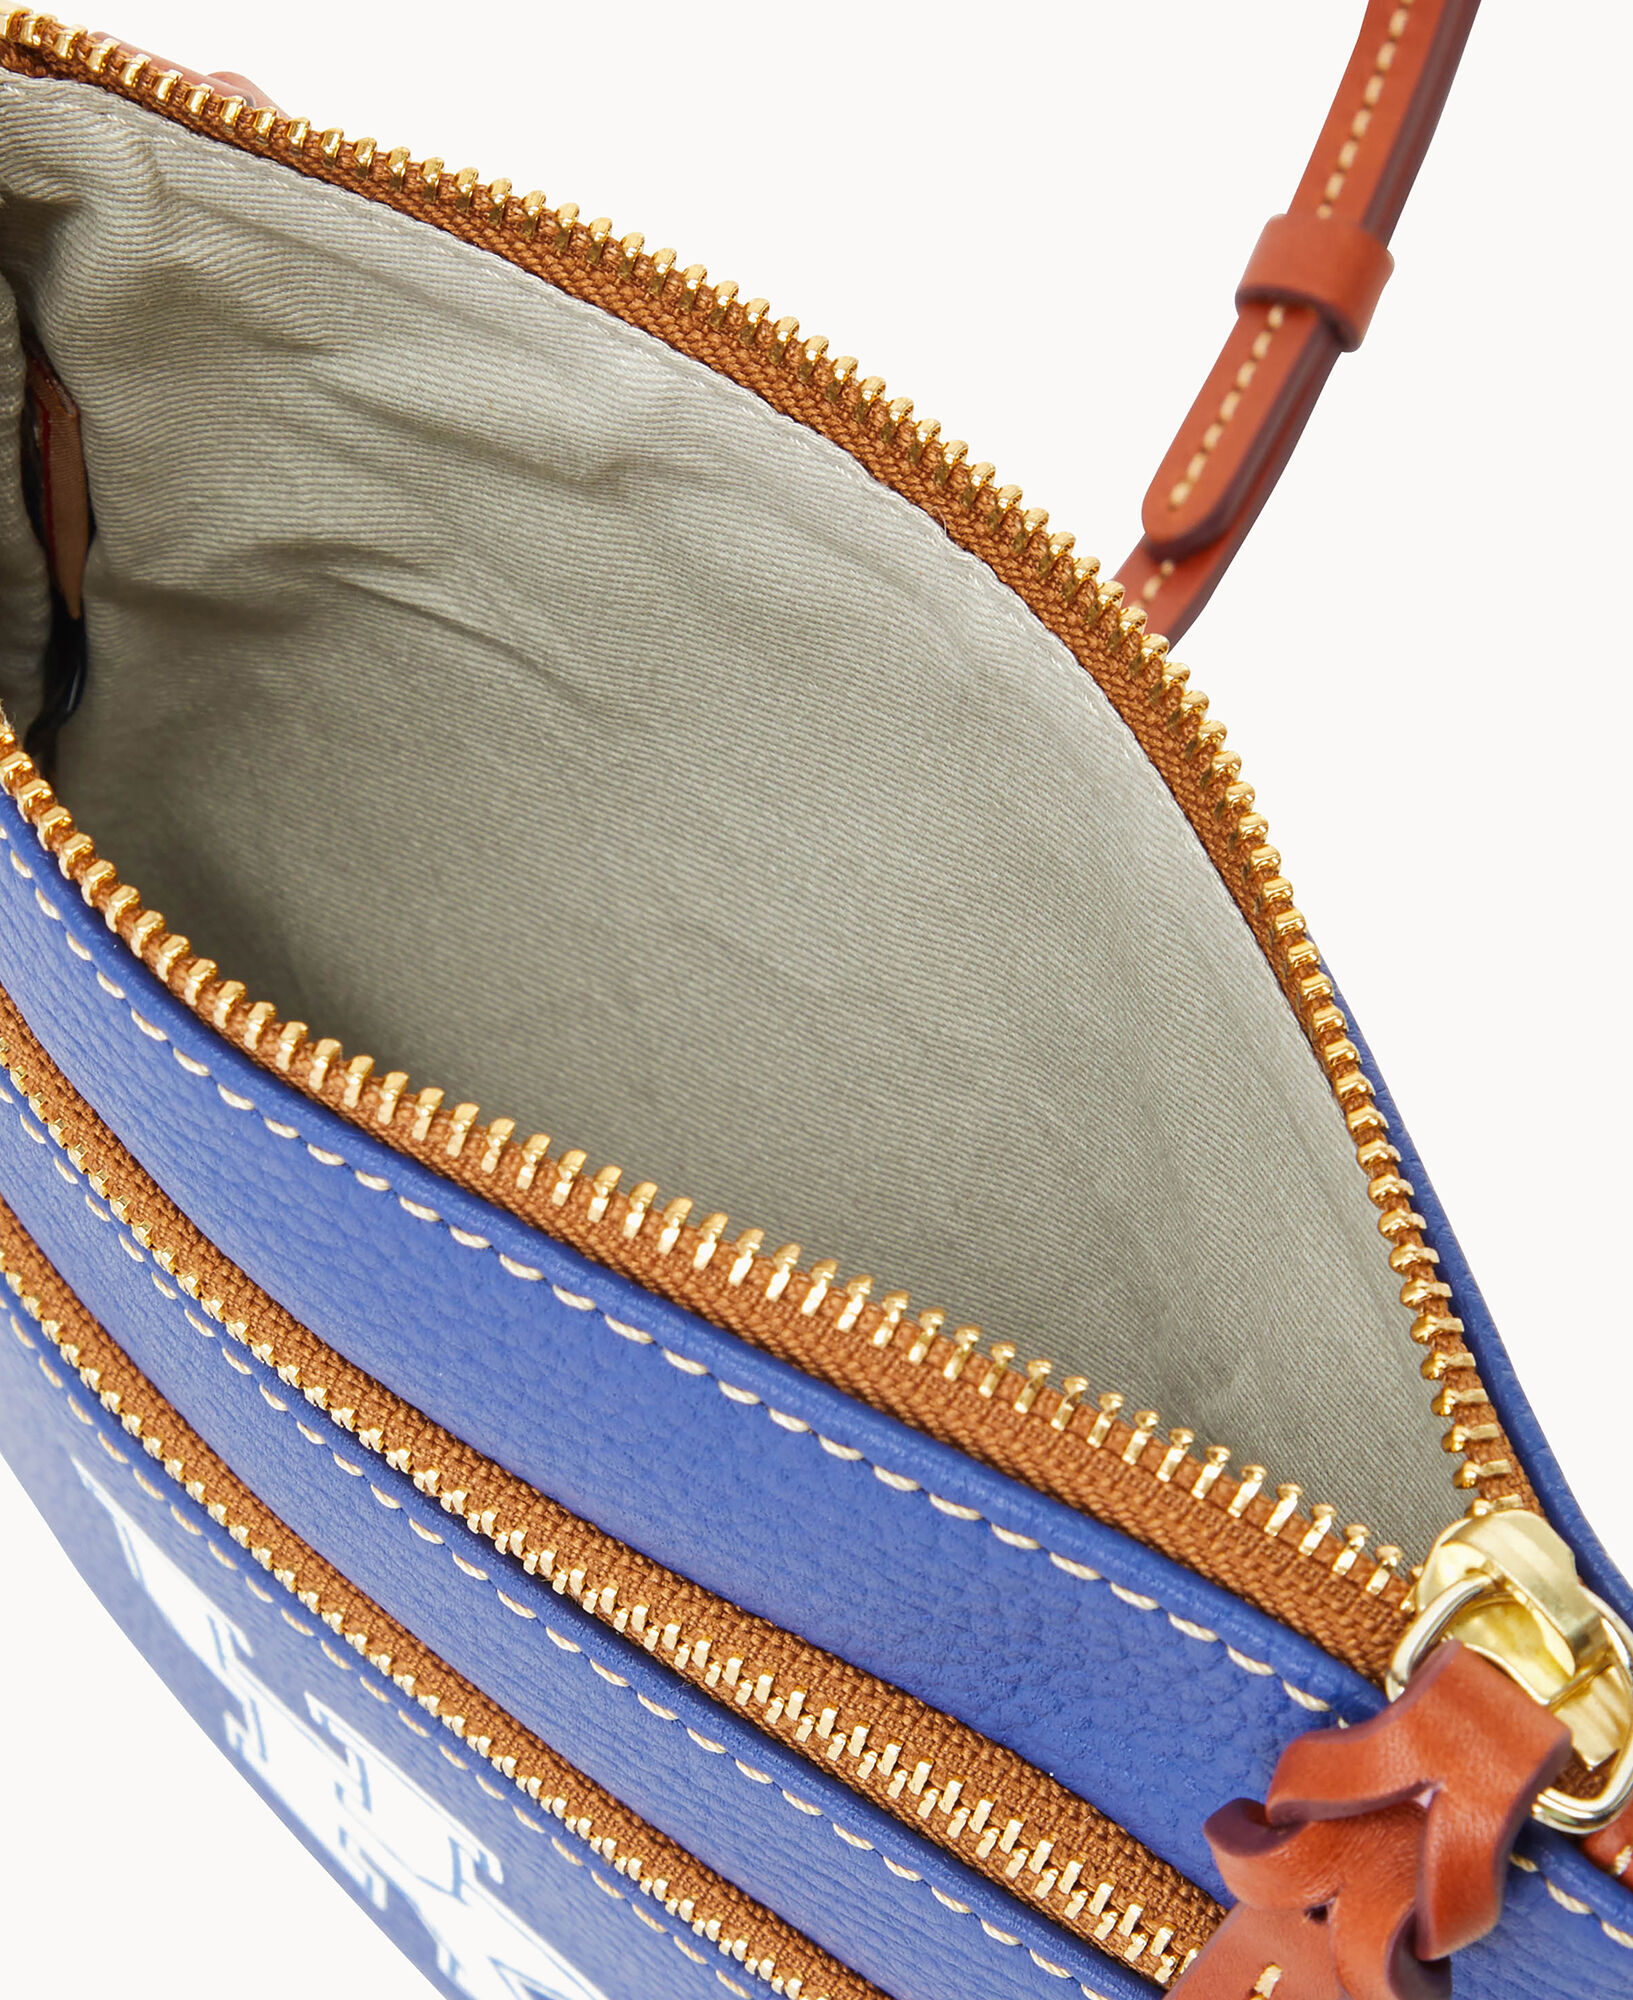 Dooney & Bourke Collegiate Clemson Triple Zip Crossbody Shoulder Bag